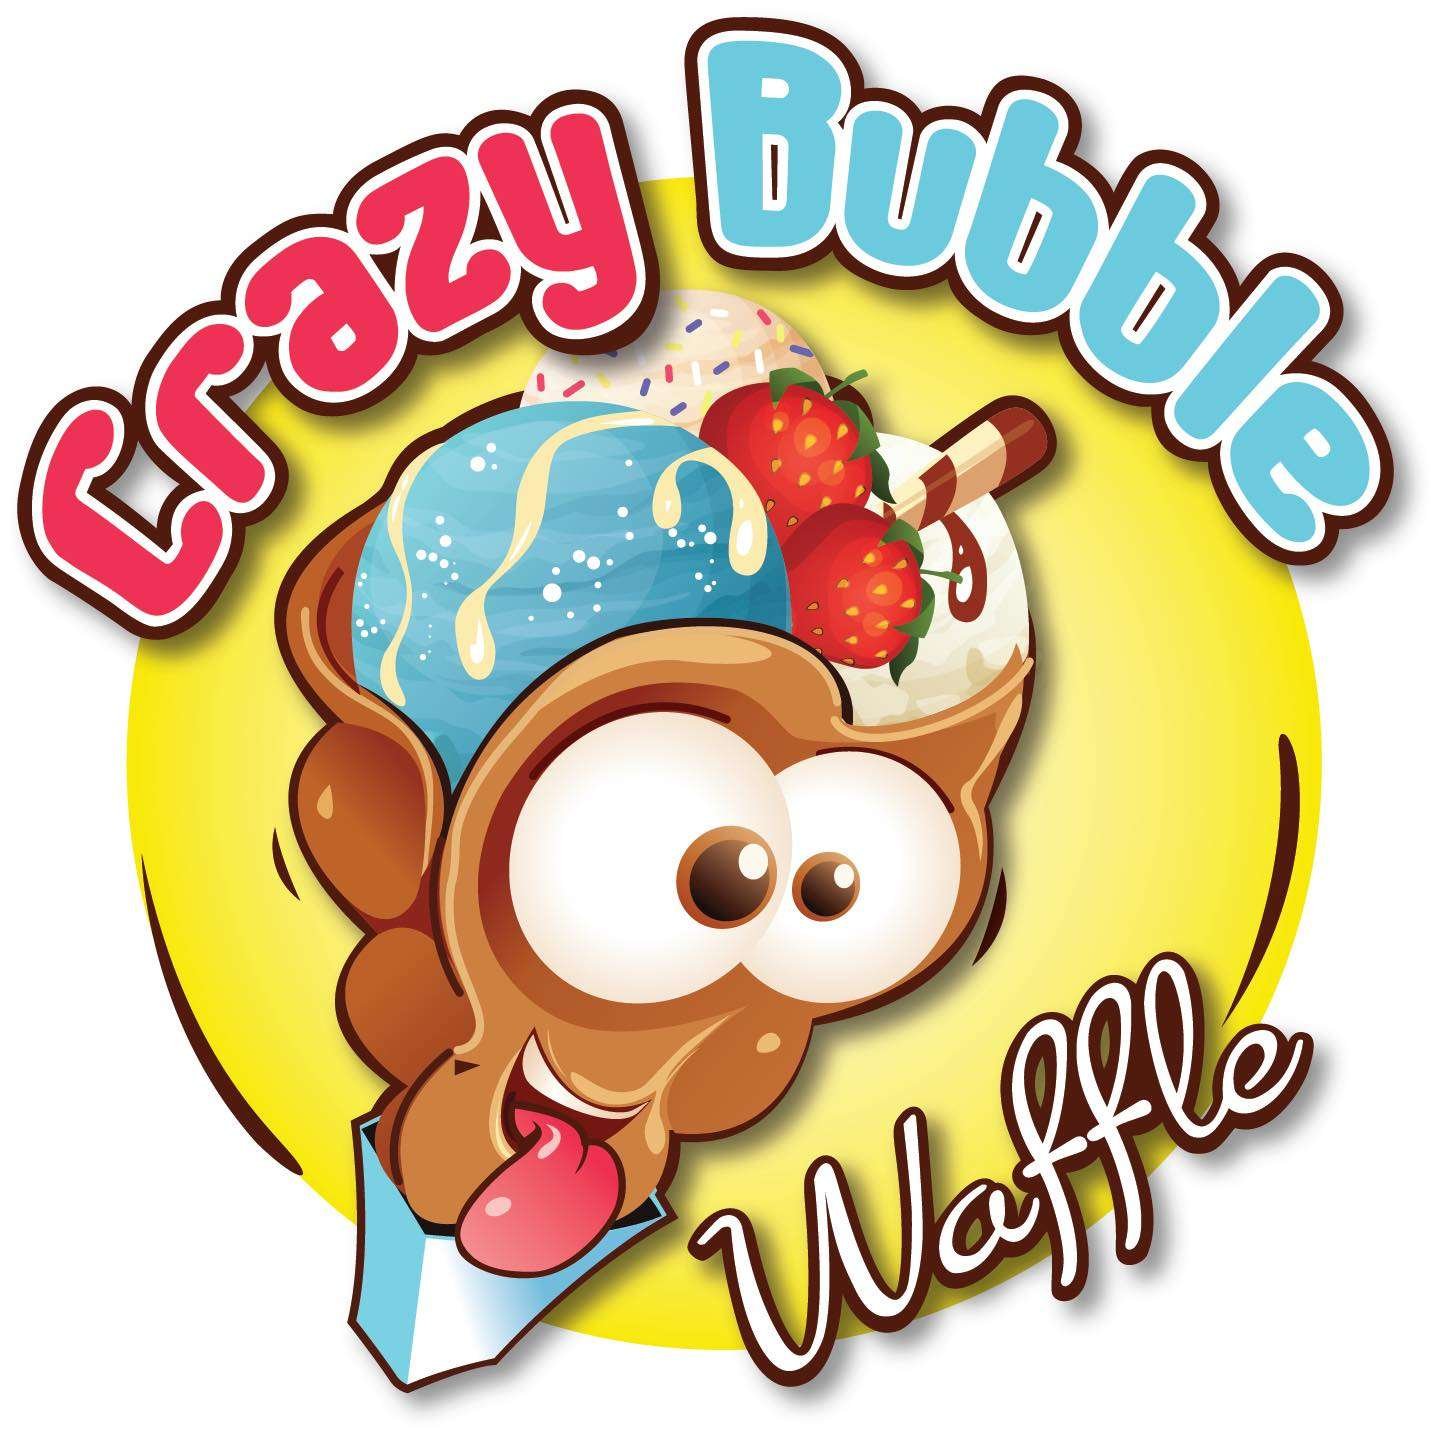 Cray Bubbles Waffle logo